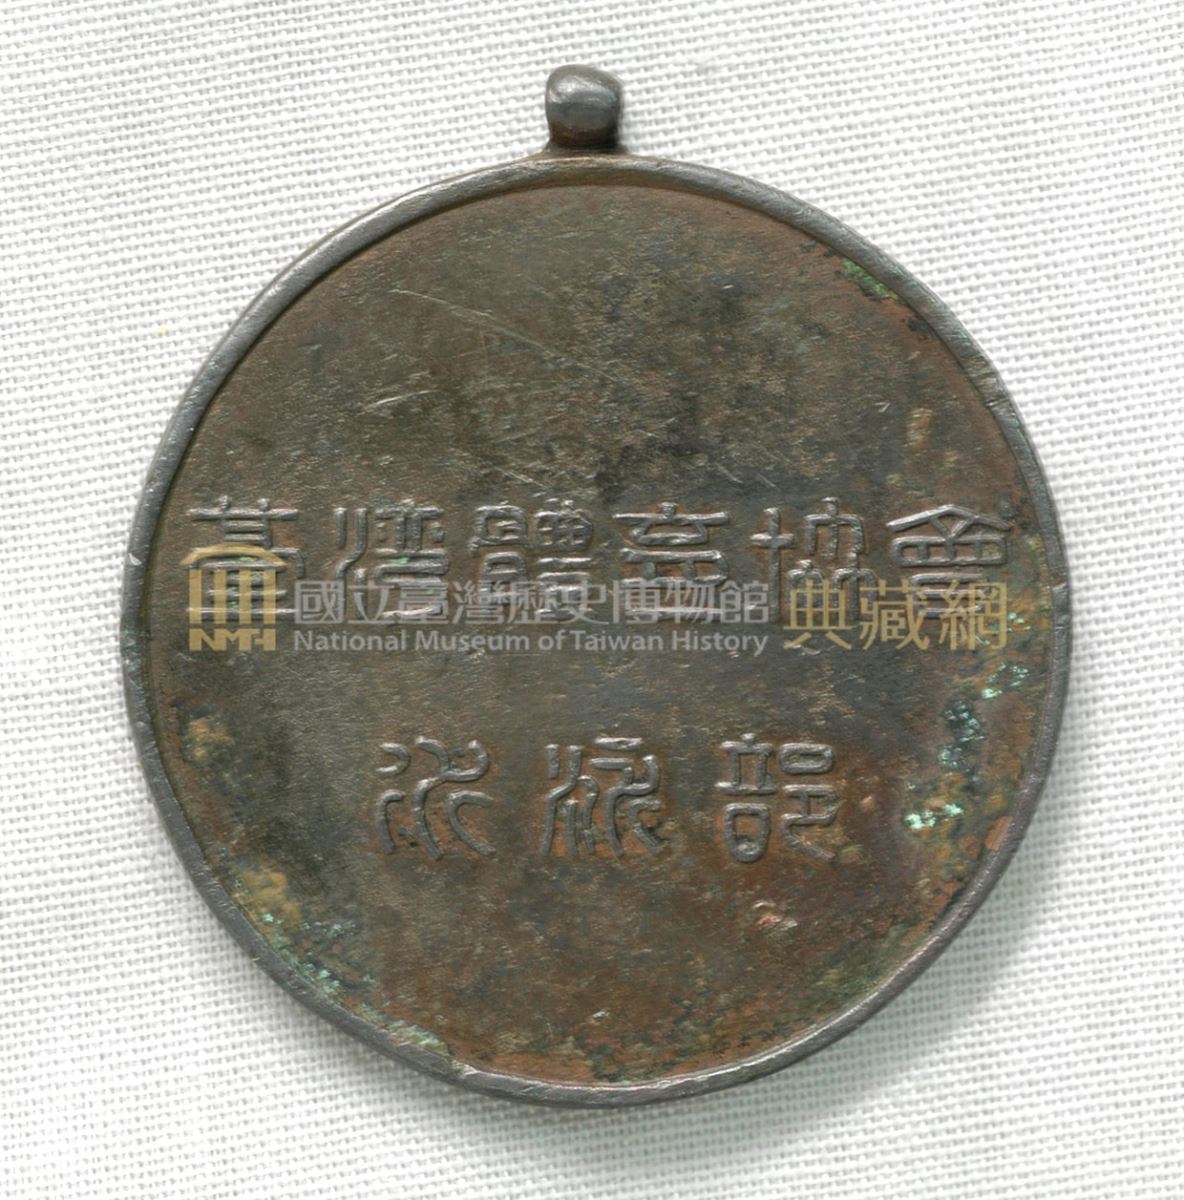 臺灣體育協會水泳部紀念徽章